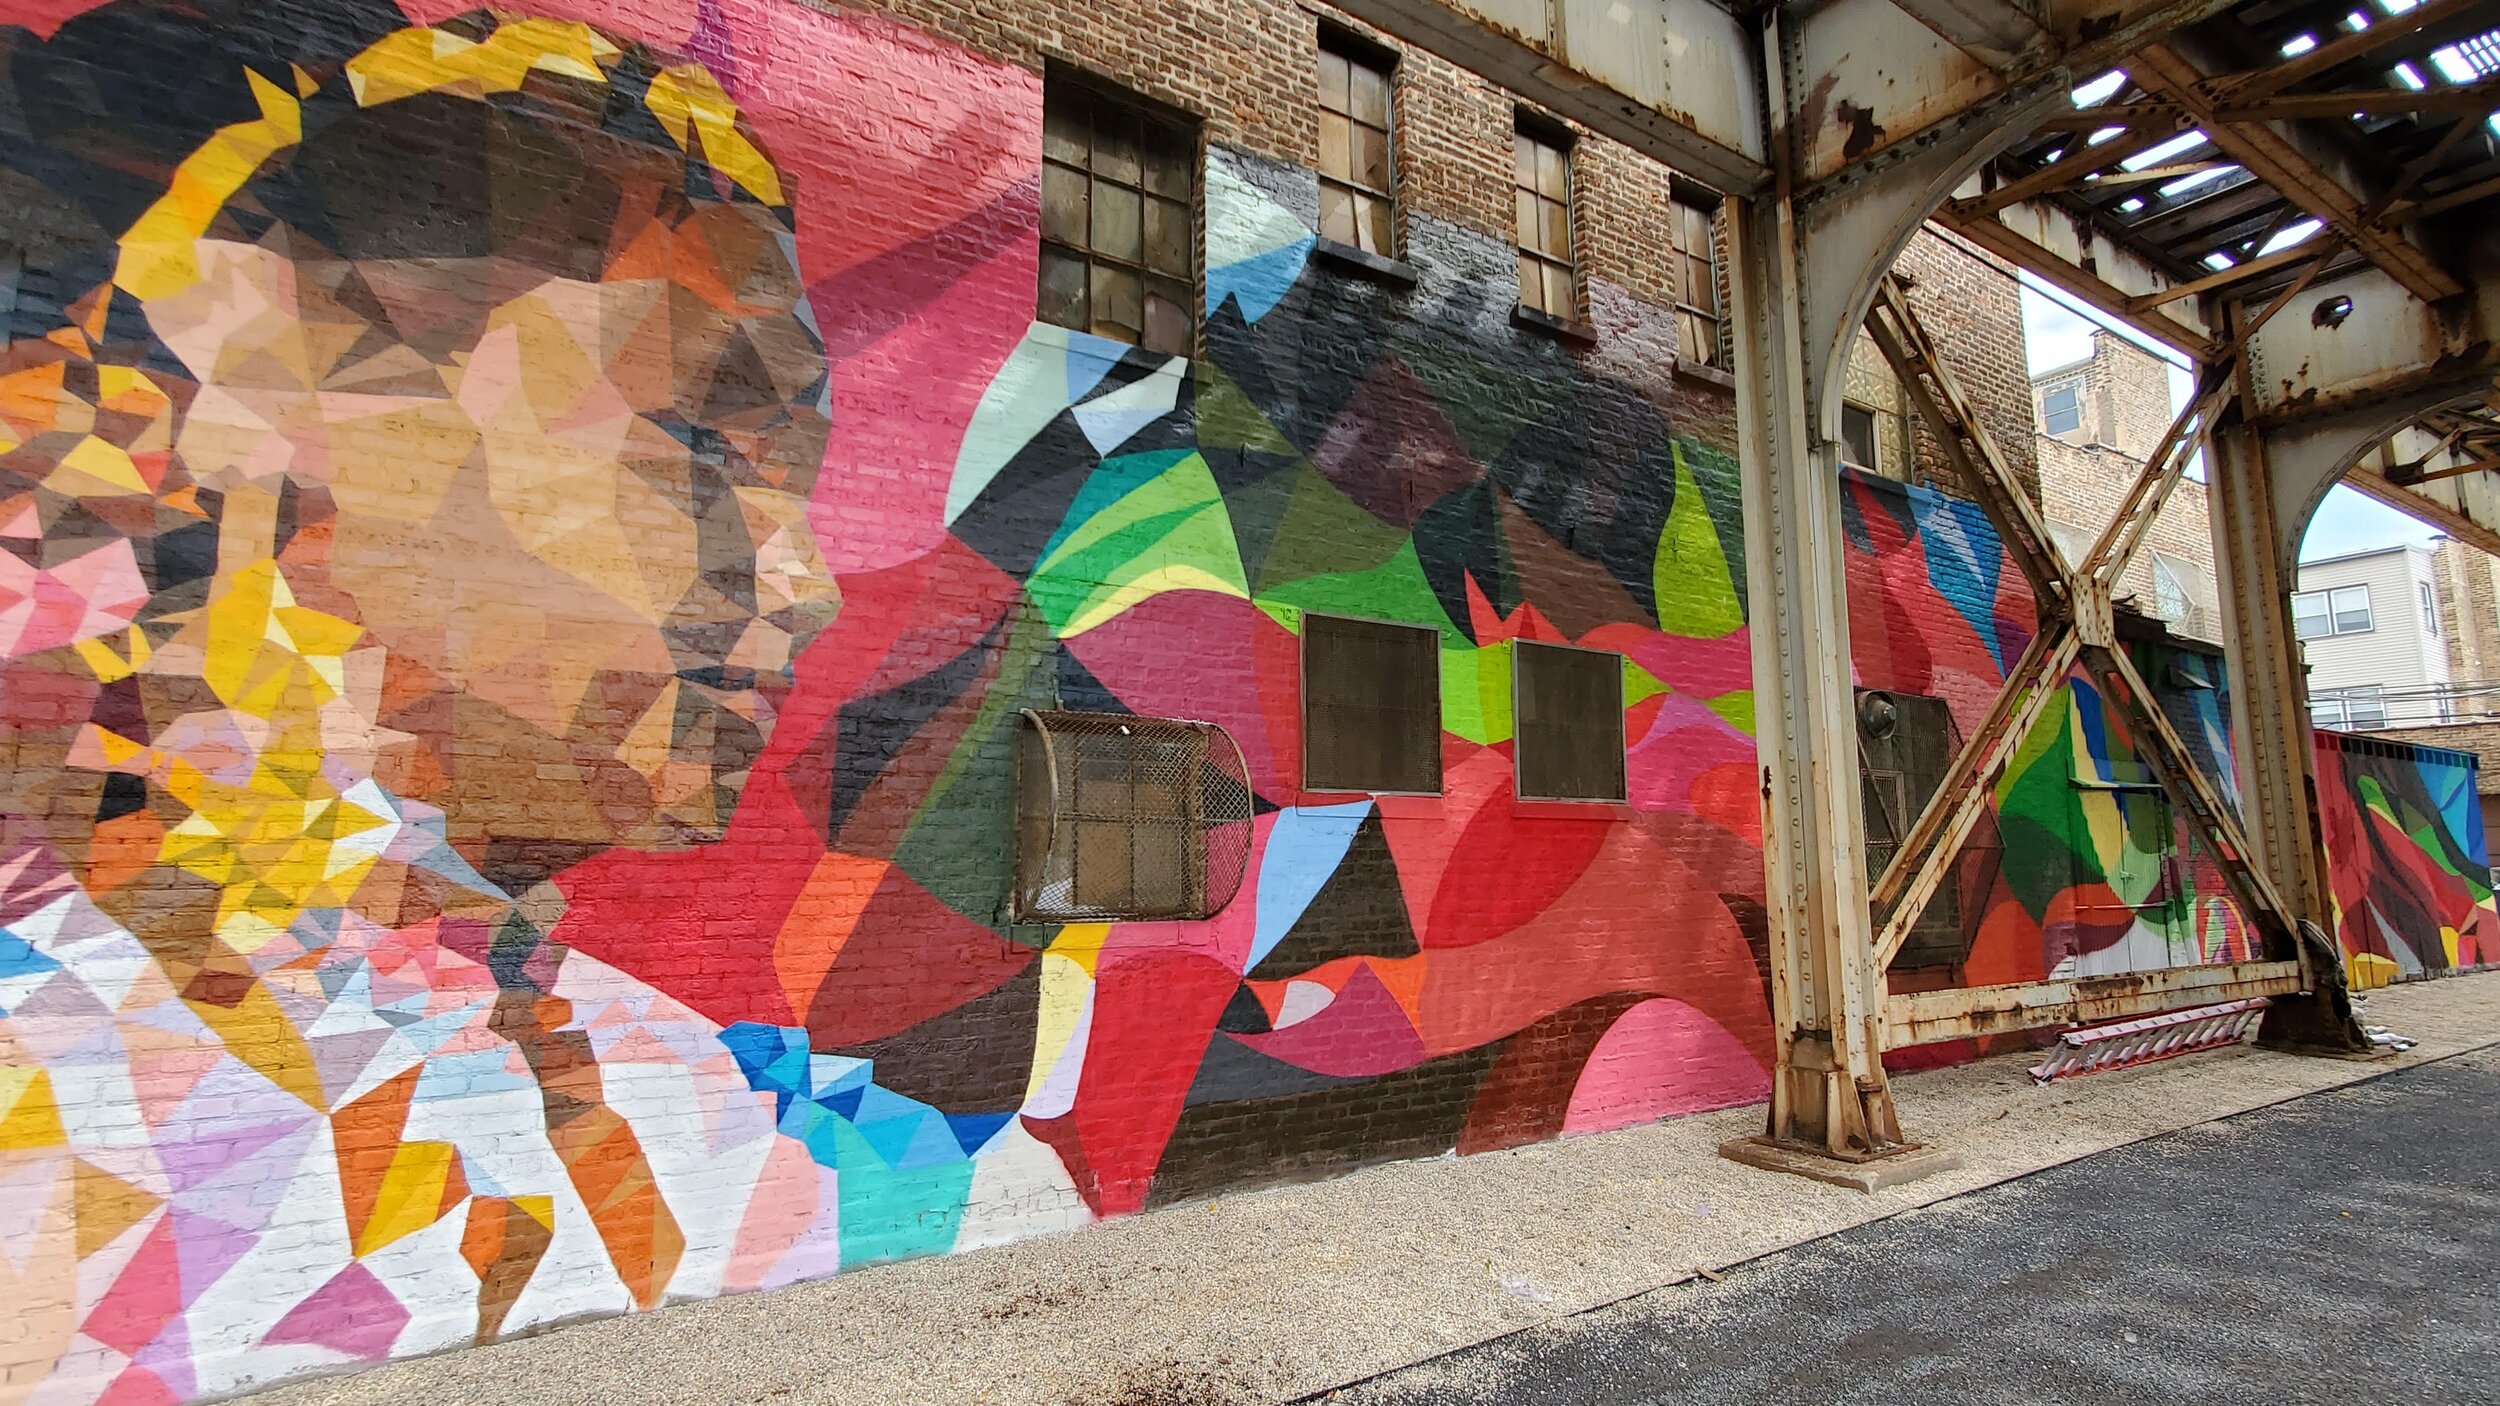 全年，毛里西奥·拉米雷斯(2020-2021):3415 N. 阿什兰大道b|芝加哥人, Mauricio拉米雷斯, 讲述了季节如何影响整个城市的活动. 透过这幅壁画，你可以看到四季的色彩是如何变化的